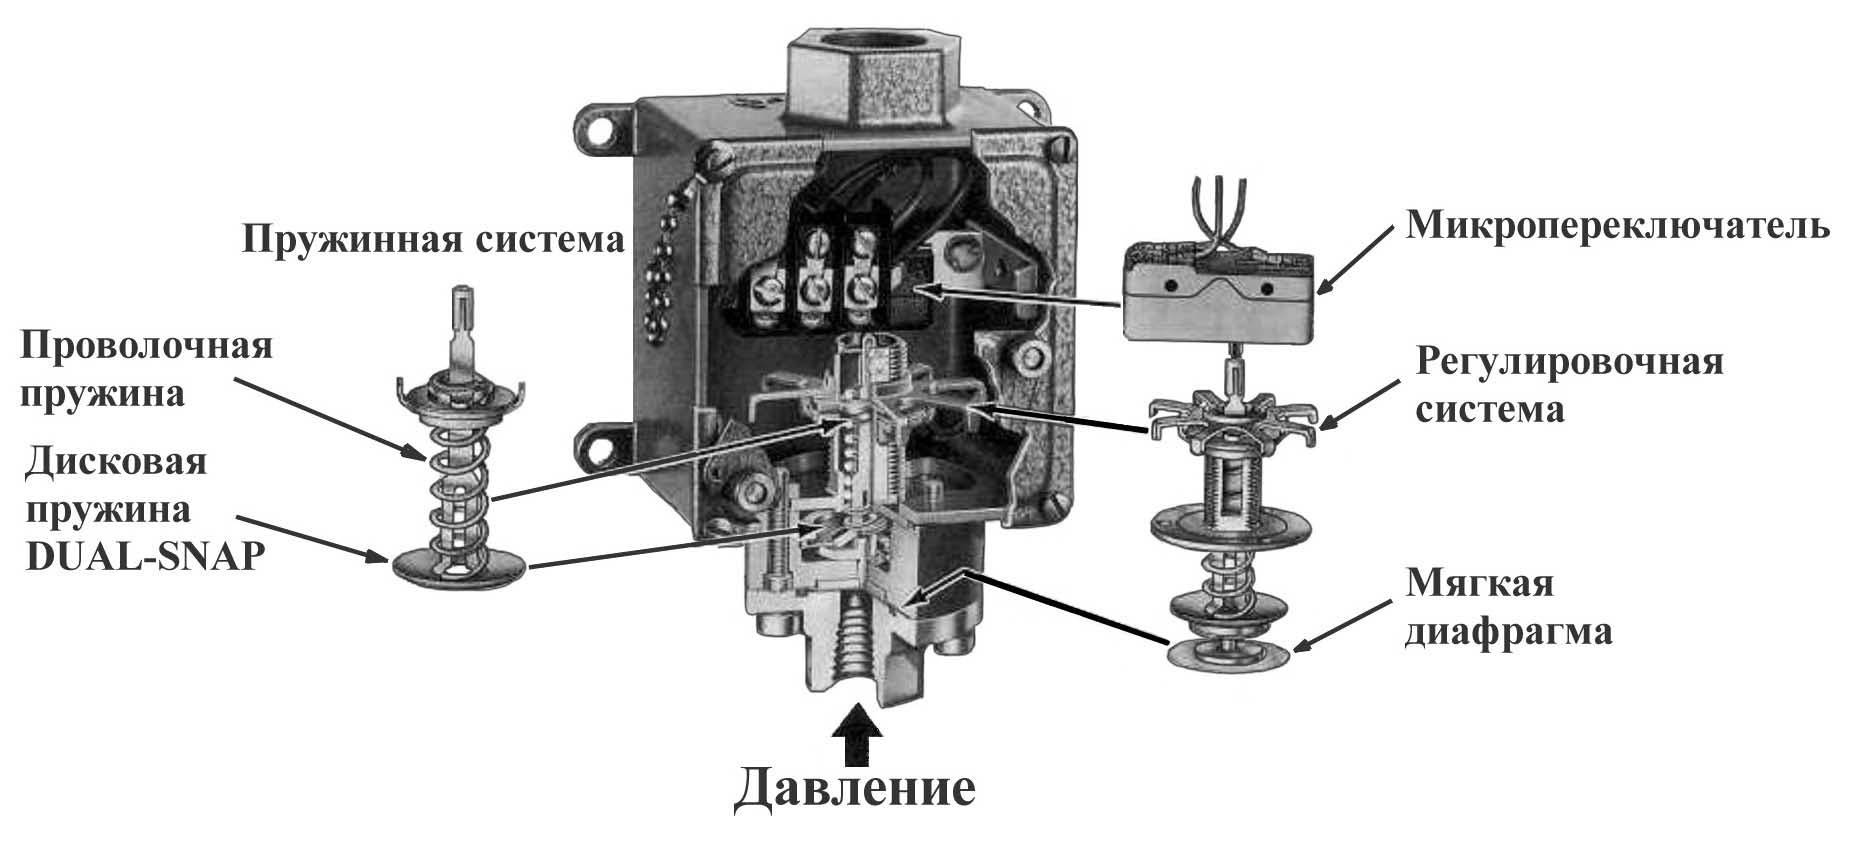 Реле давления для компрессора: настройка и схема подключения